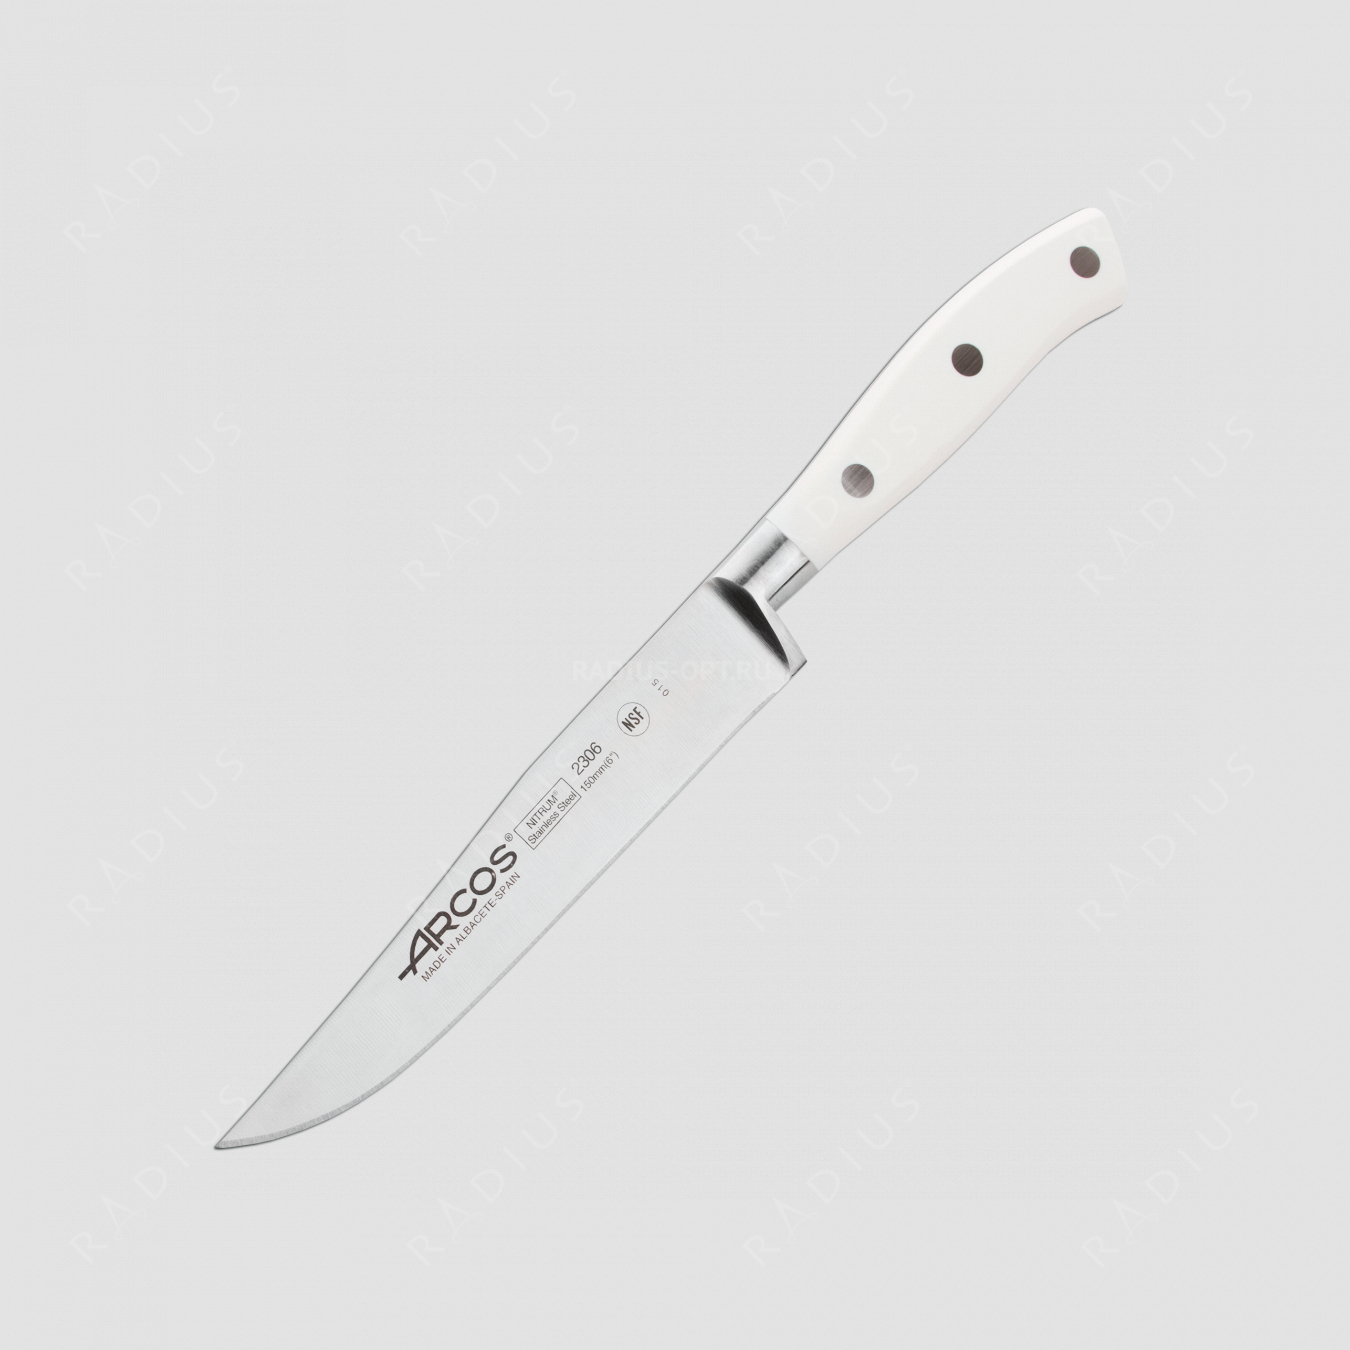 Нож кухонный универсальный 15 см, серия Riviera Blanca, ARCOS, Испания